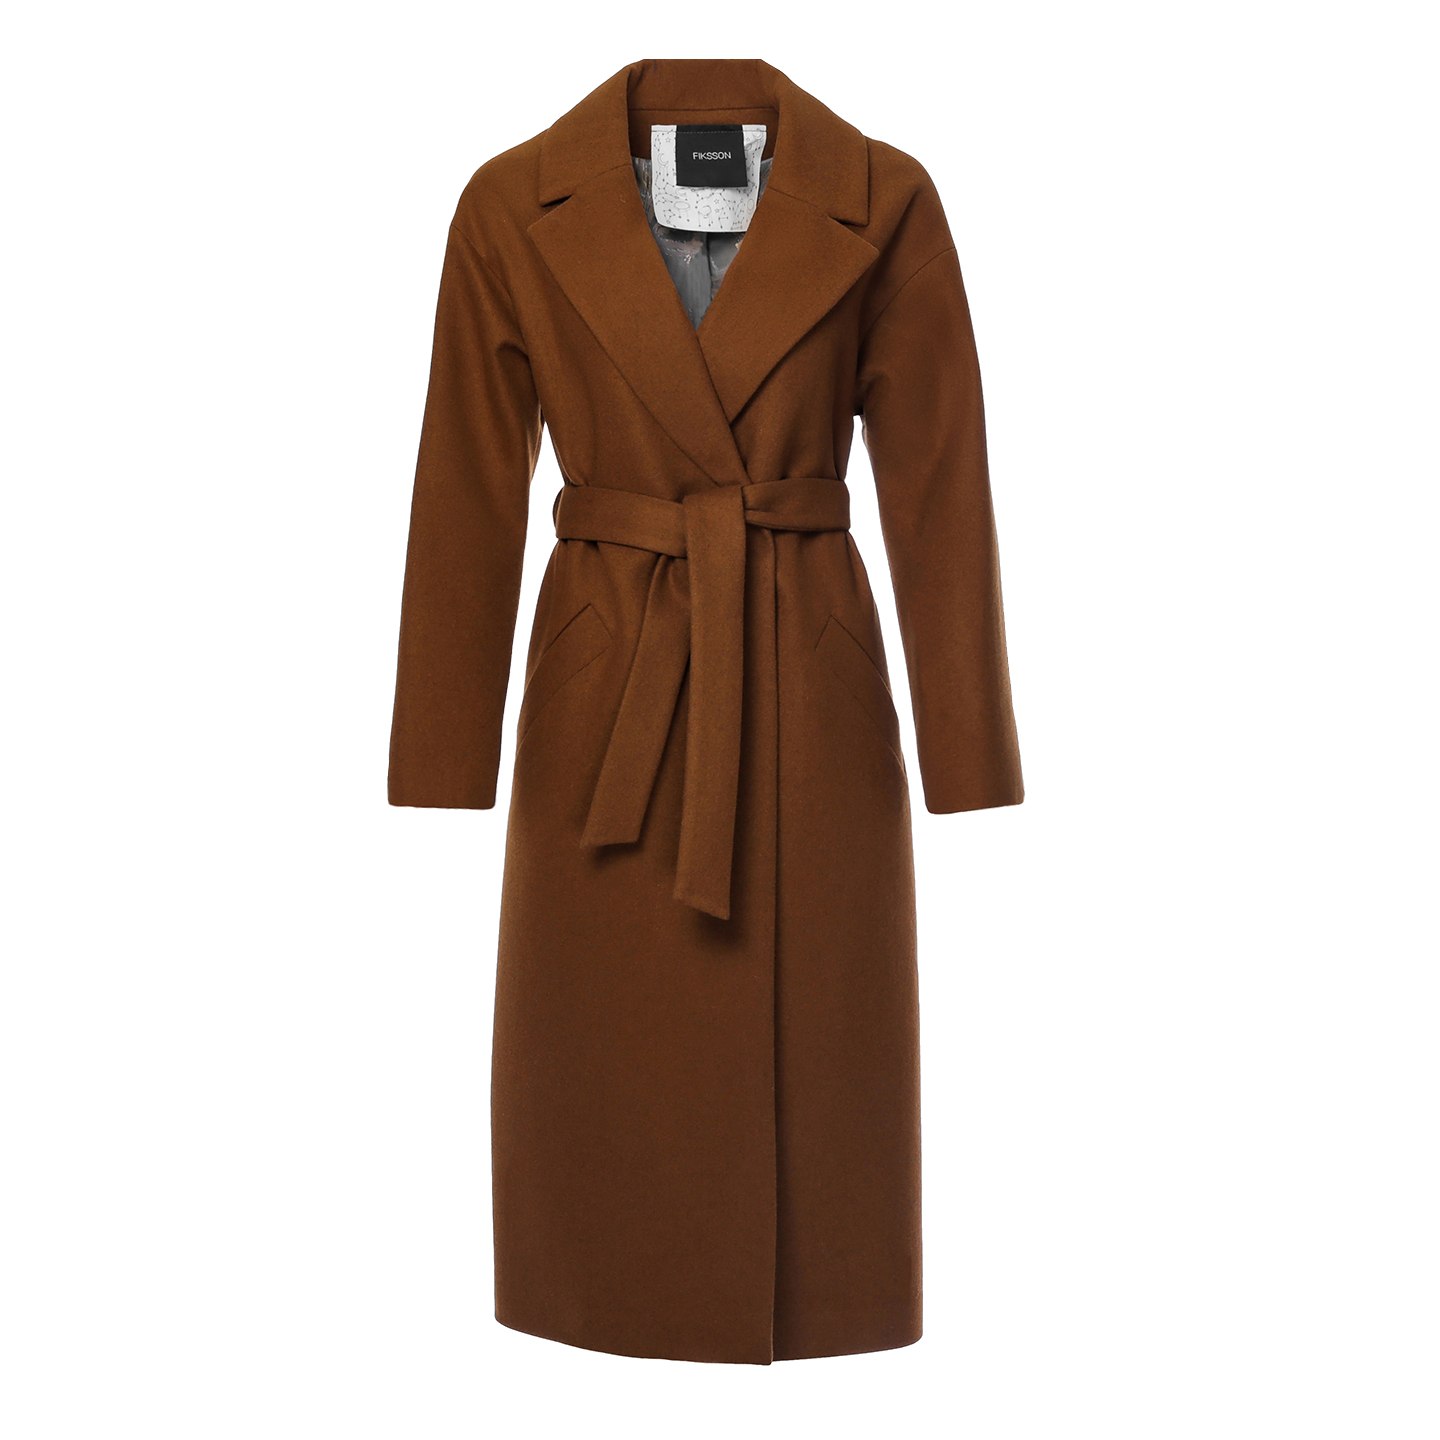 Купить коричневое пальто. Коричневое пальто женское. Коричневое пальто. Пальто коричневого цвета. Шоколадное пальто.